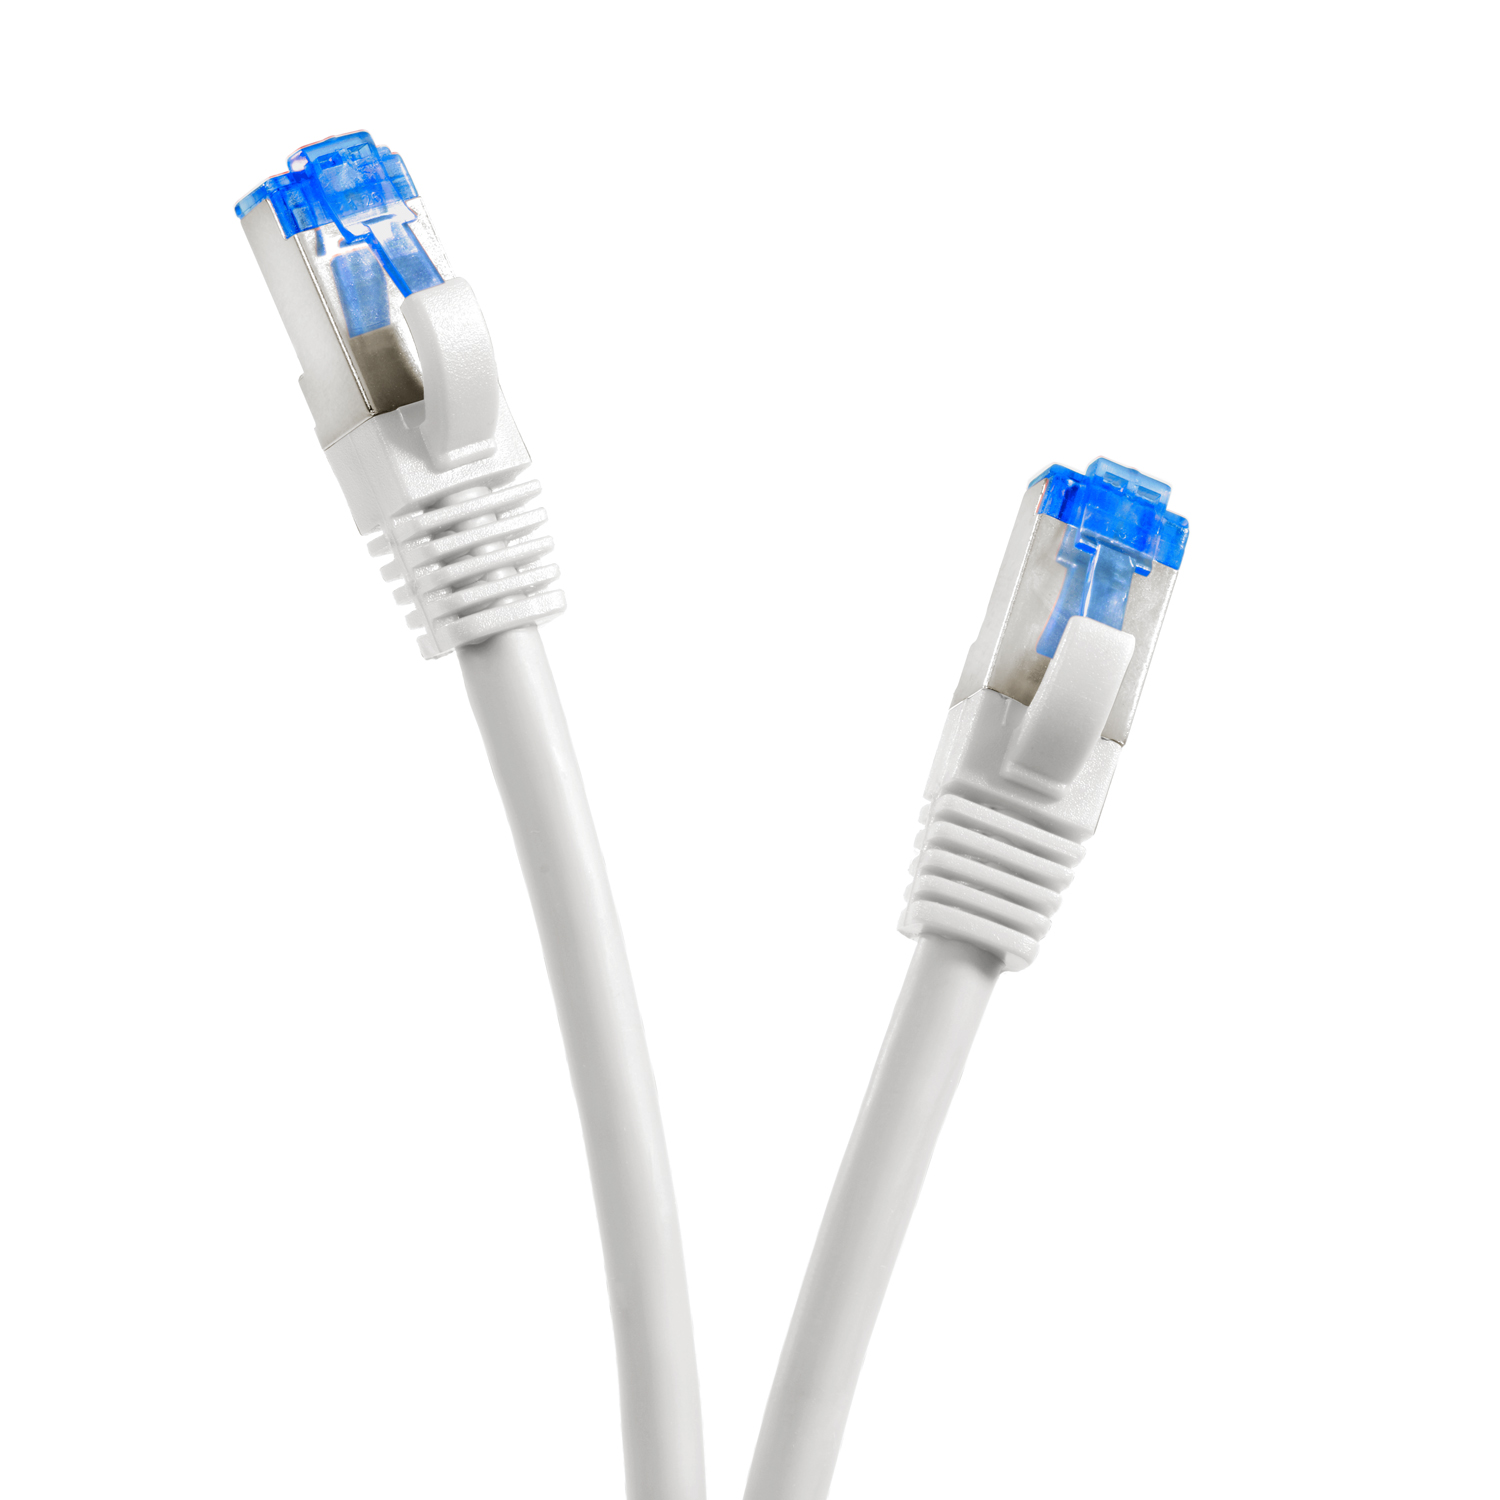 Netzwerkkabel 10GBit, 1m TPFNET Netzwerkkabel, S/FTP Patchkabel weiß, Pack m / 5er 1